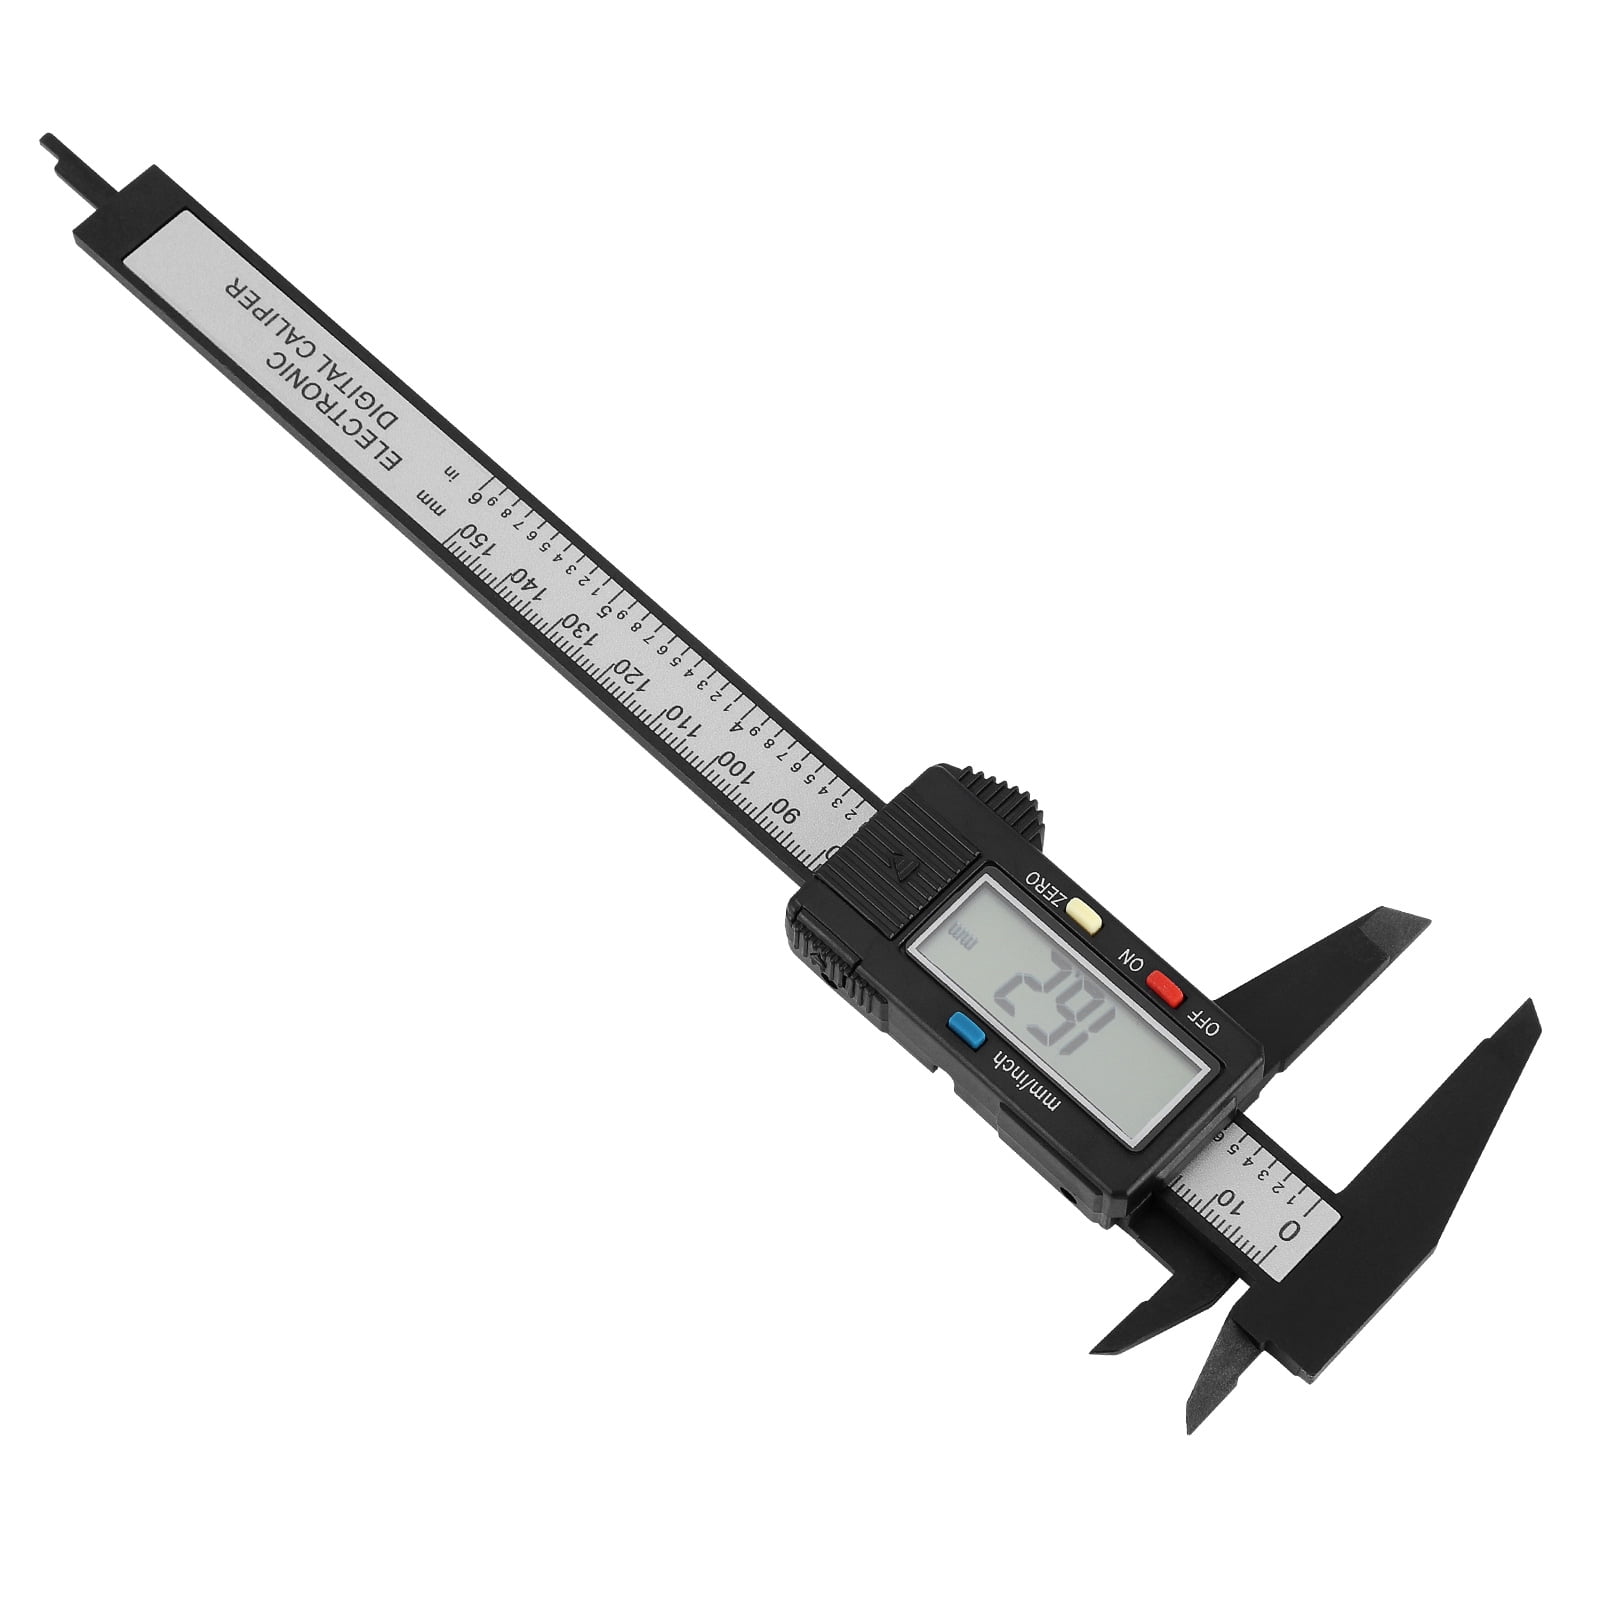 Mini Key Ring Calipers Special Simulation Model Slide Ruler Vernier Digital  Caliper Accurate Micrometer Measuring Gauging Too…